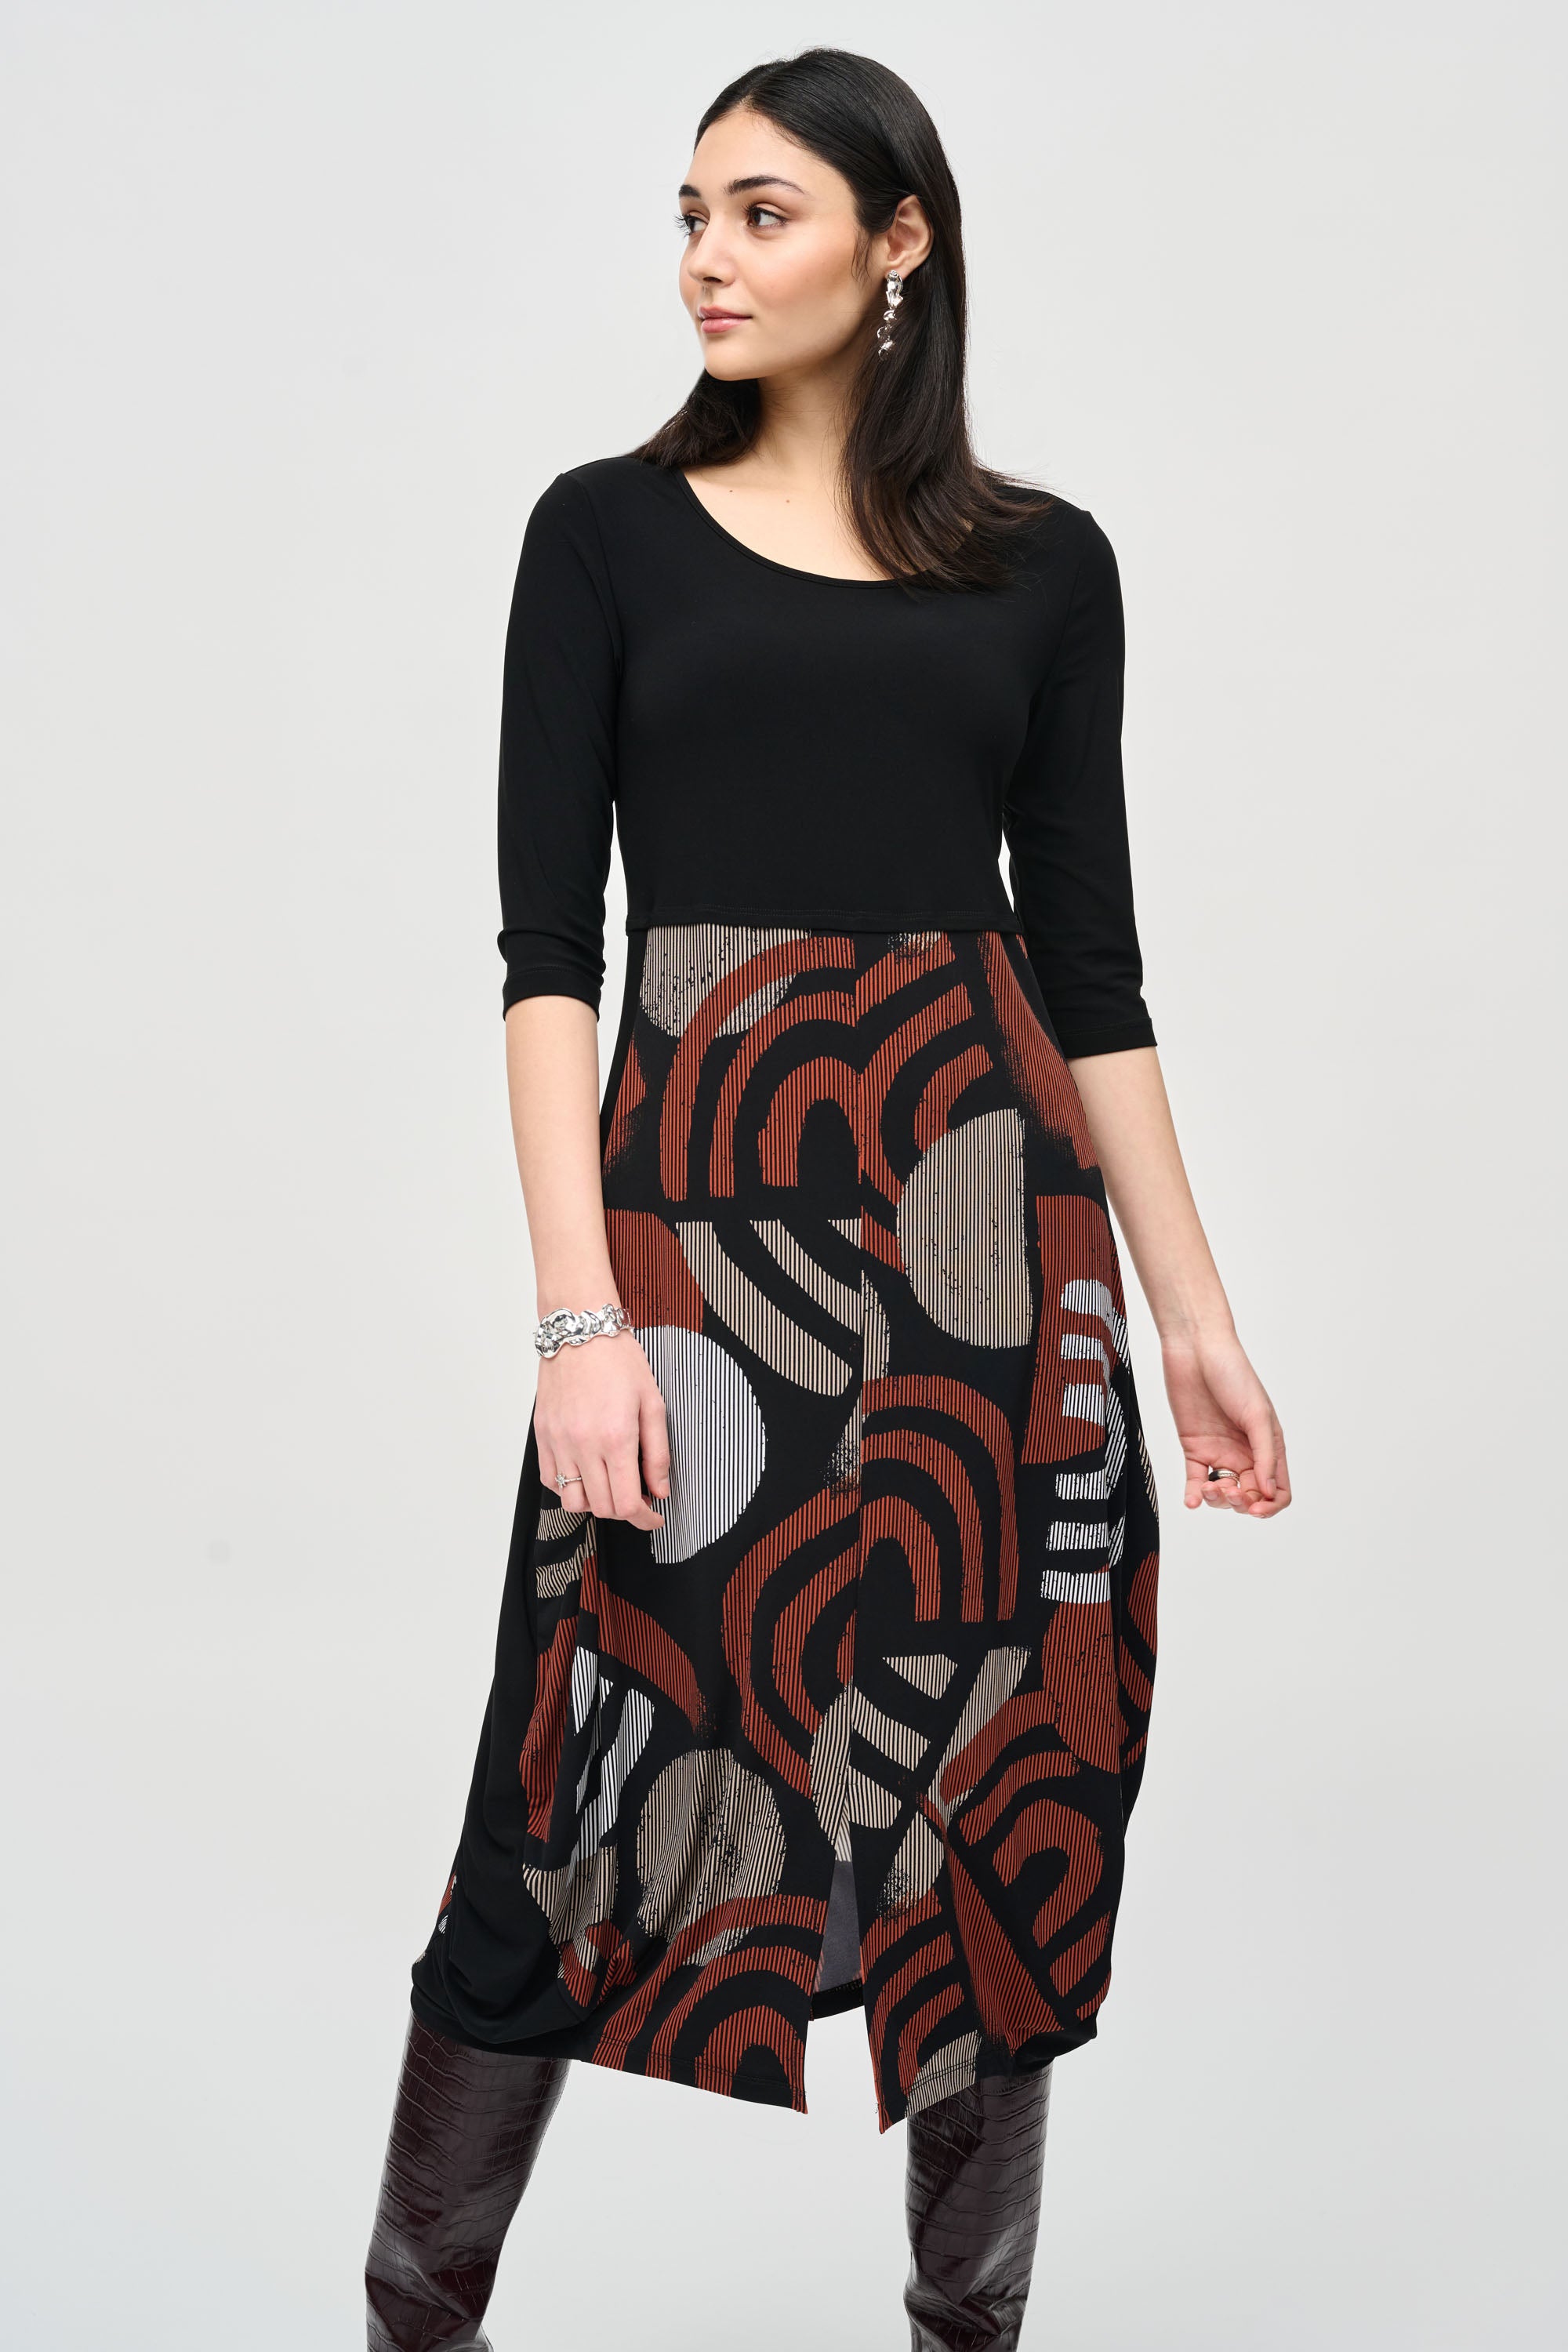 Joseph Ribkoff Geometric Print Cocoon Dress 243234 - Black/Multi